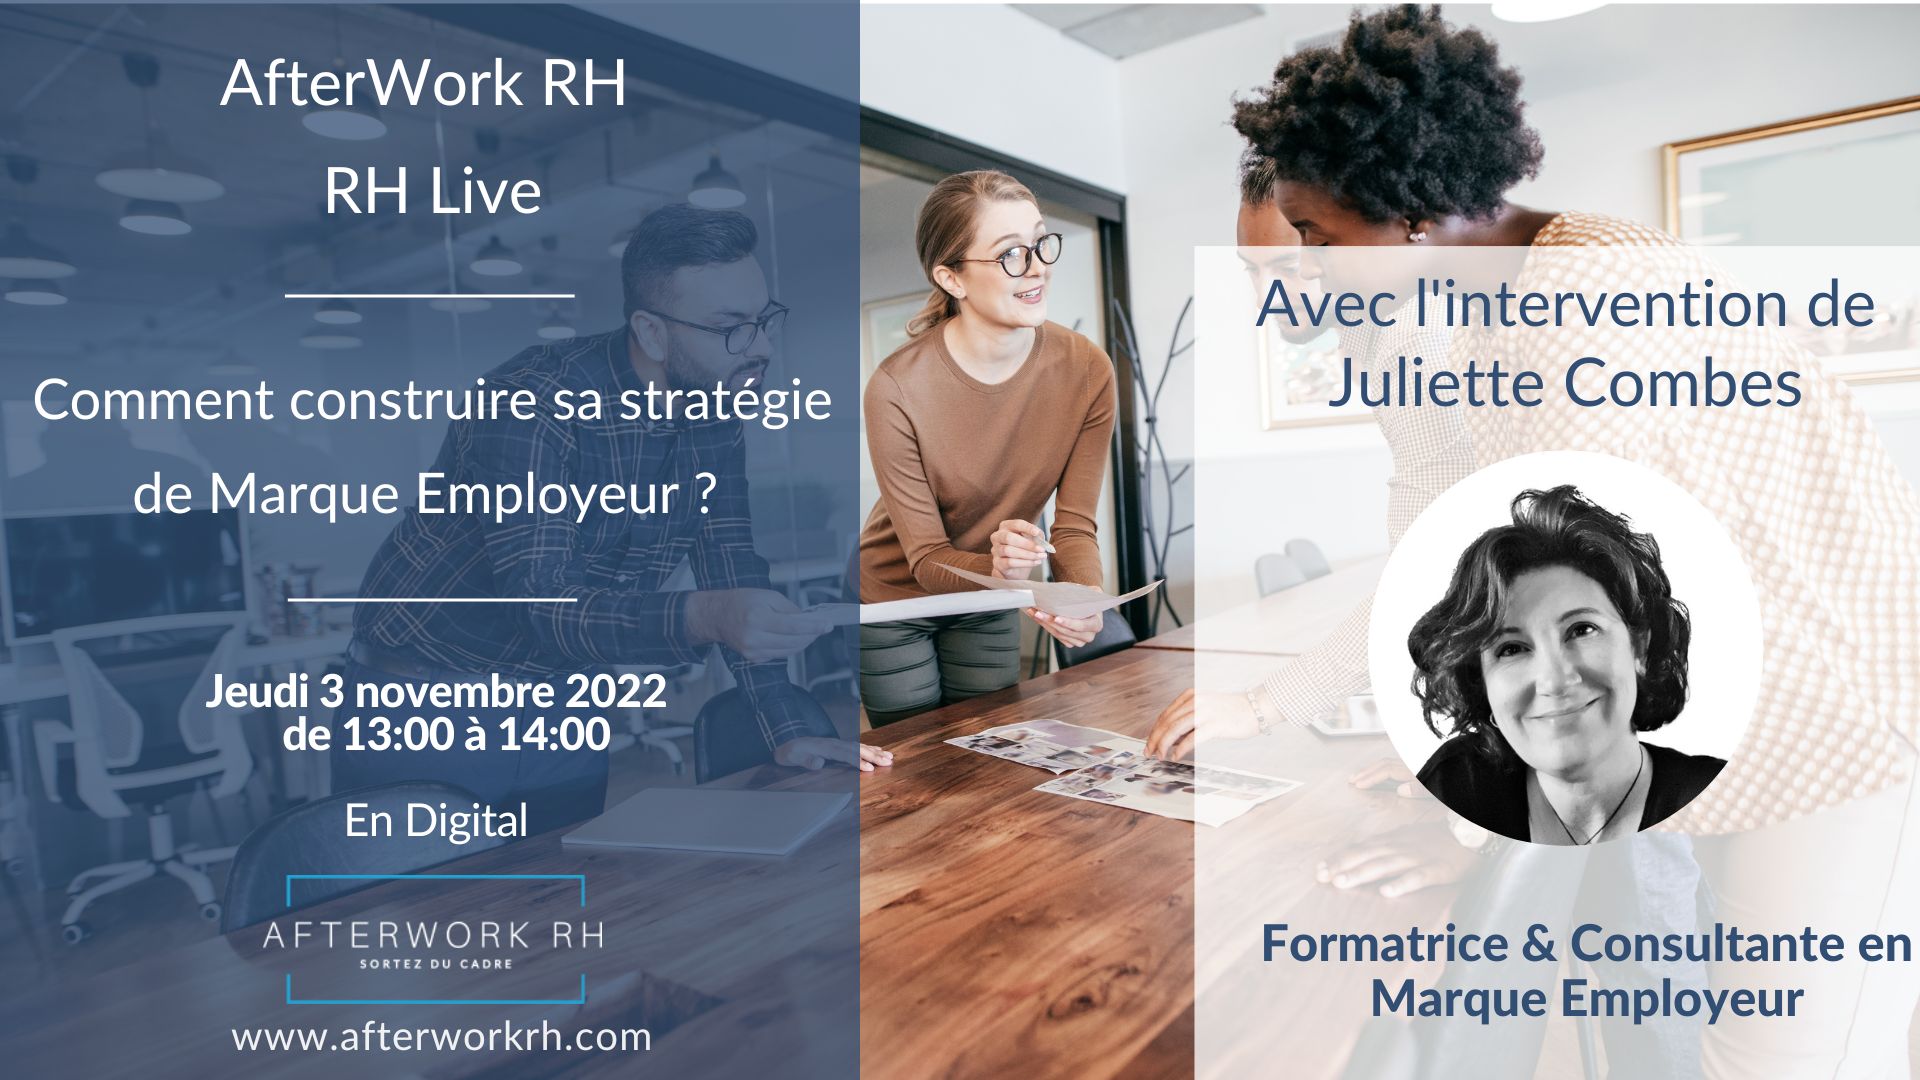 Comment construire sa stratégie de Marque Employeur ? RH Live - événement AfterWork RH